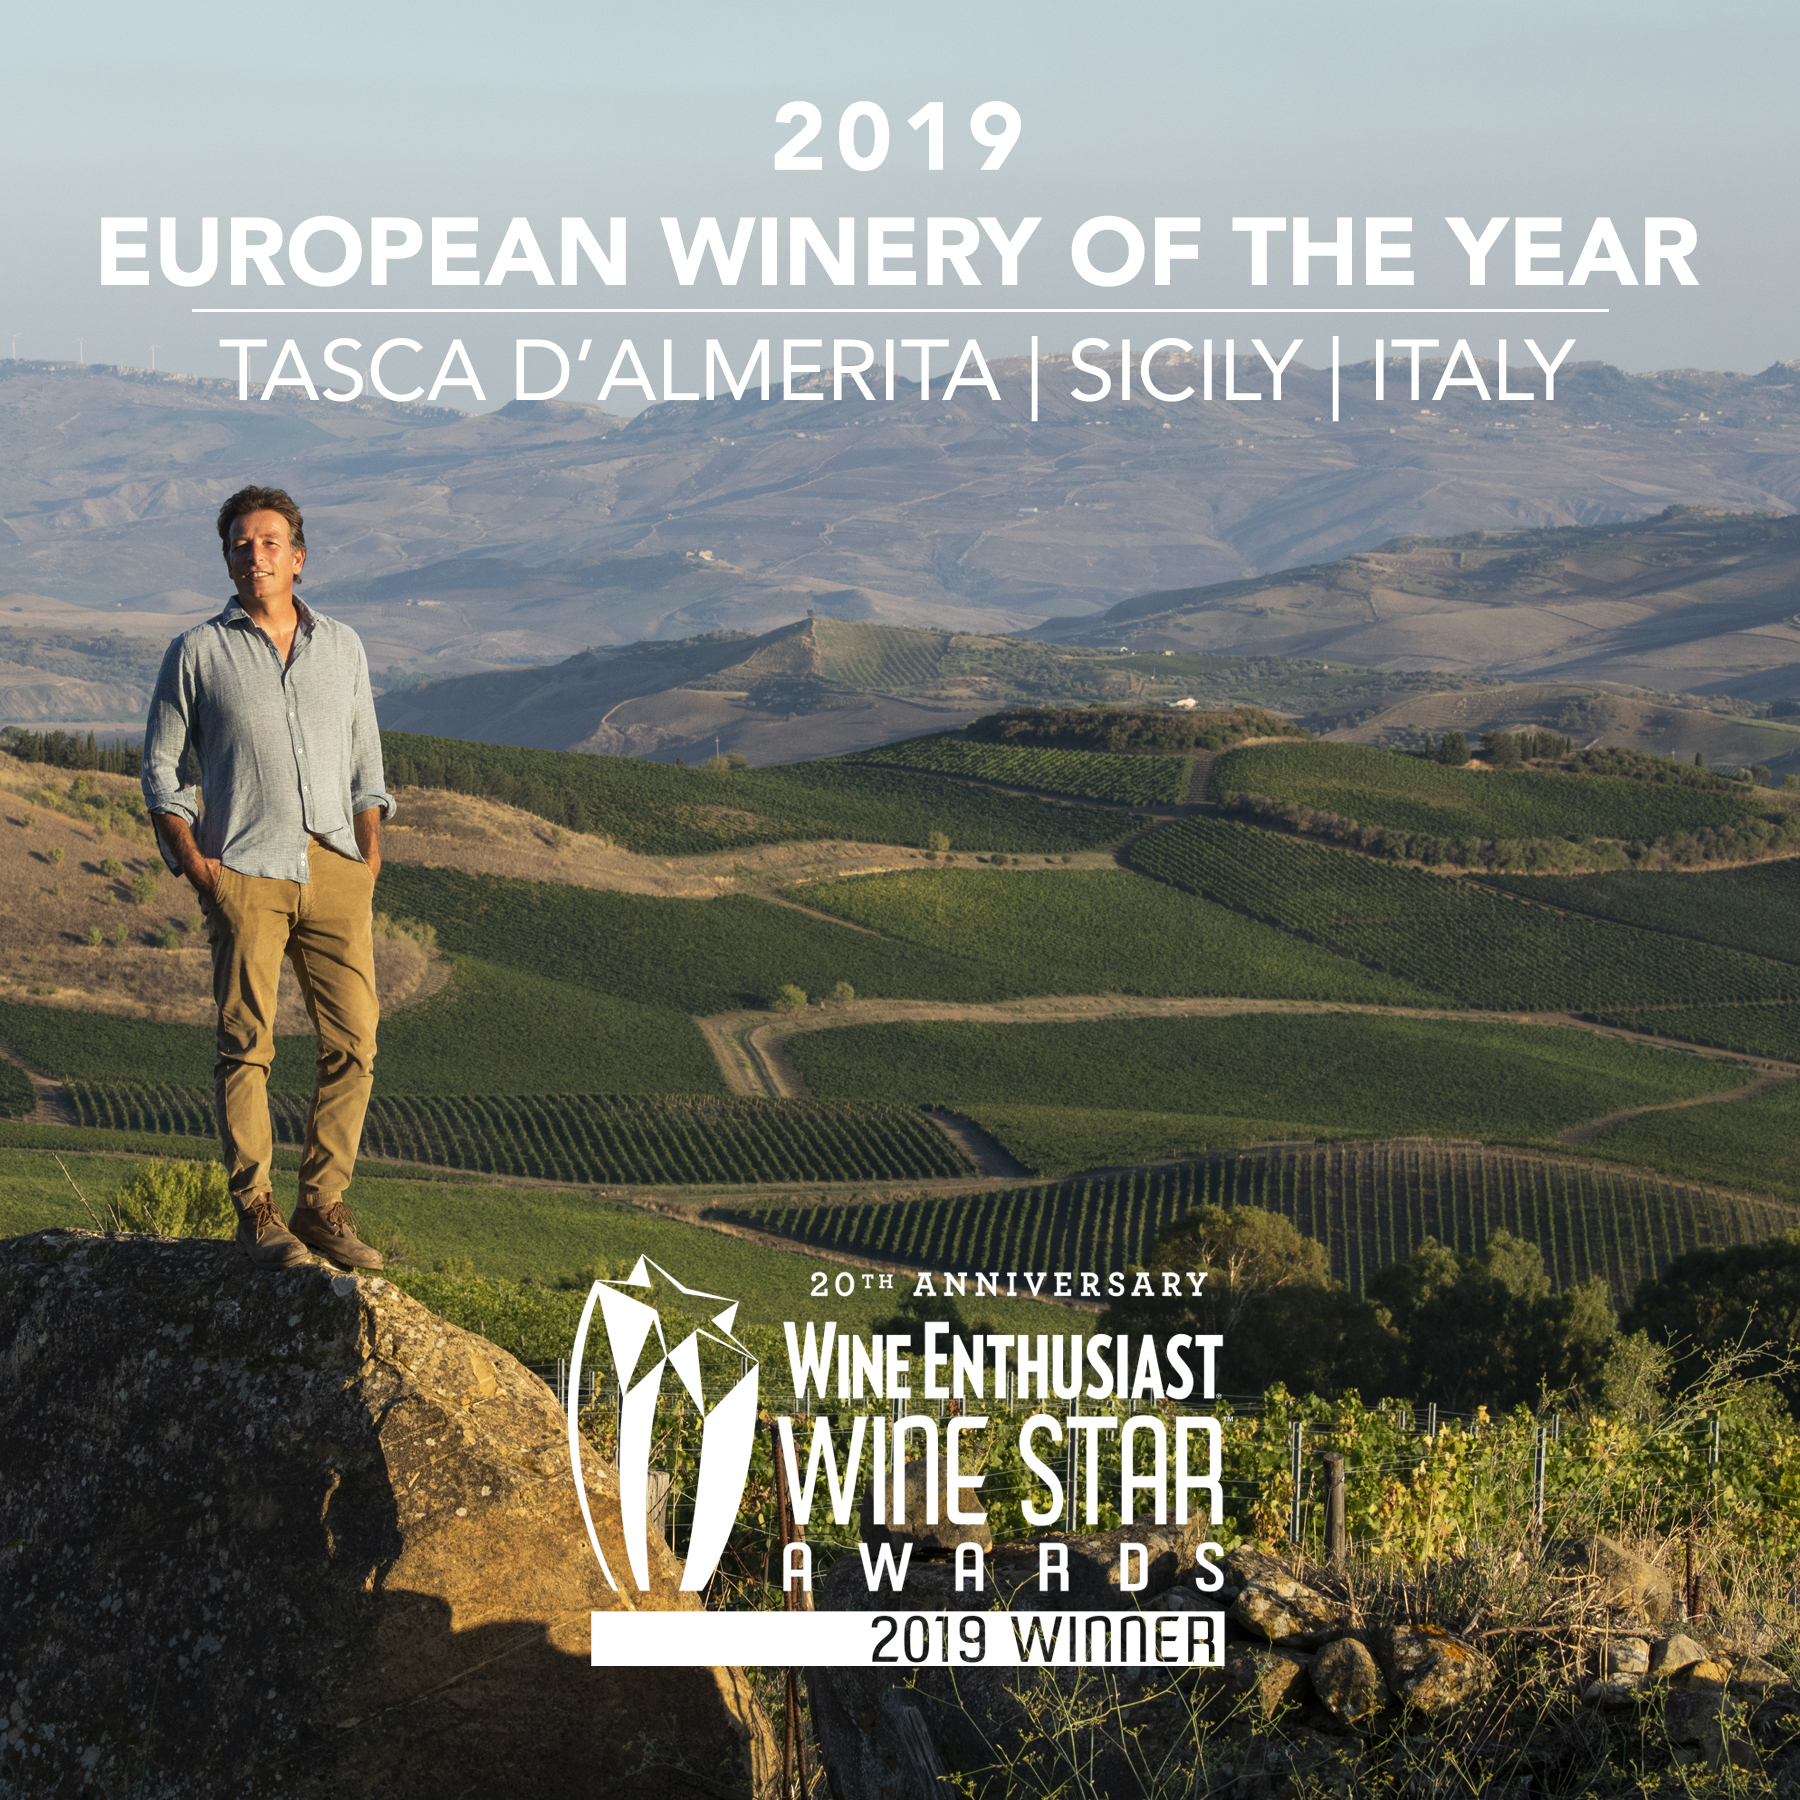 wine star awards 2019, tasca d'almerita